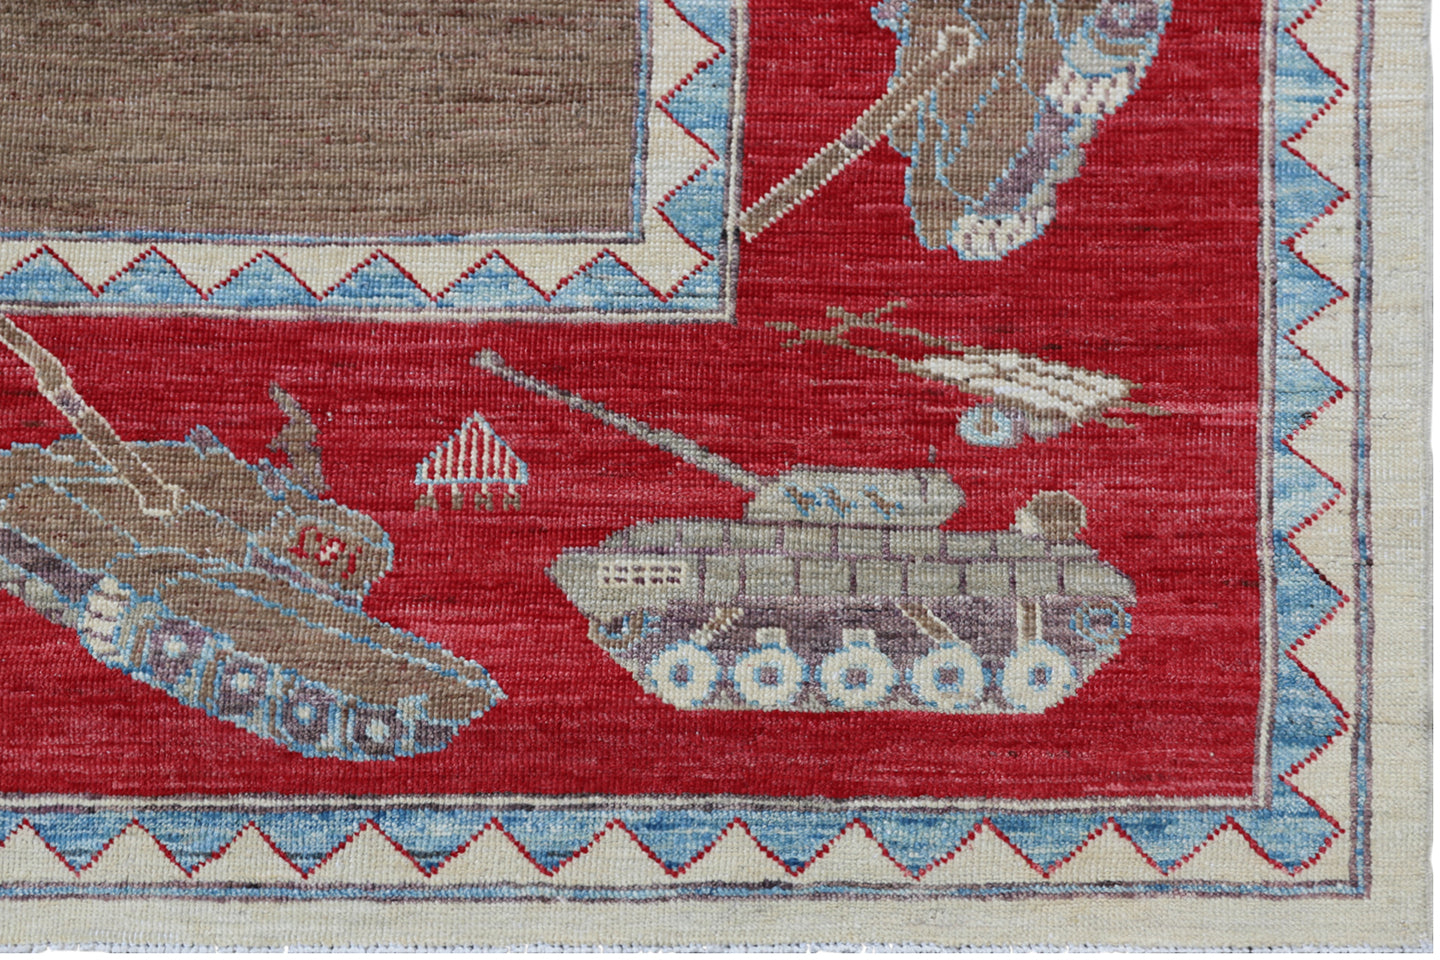 8'x10' Afghan War Rug Pictorial